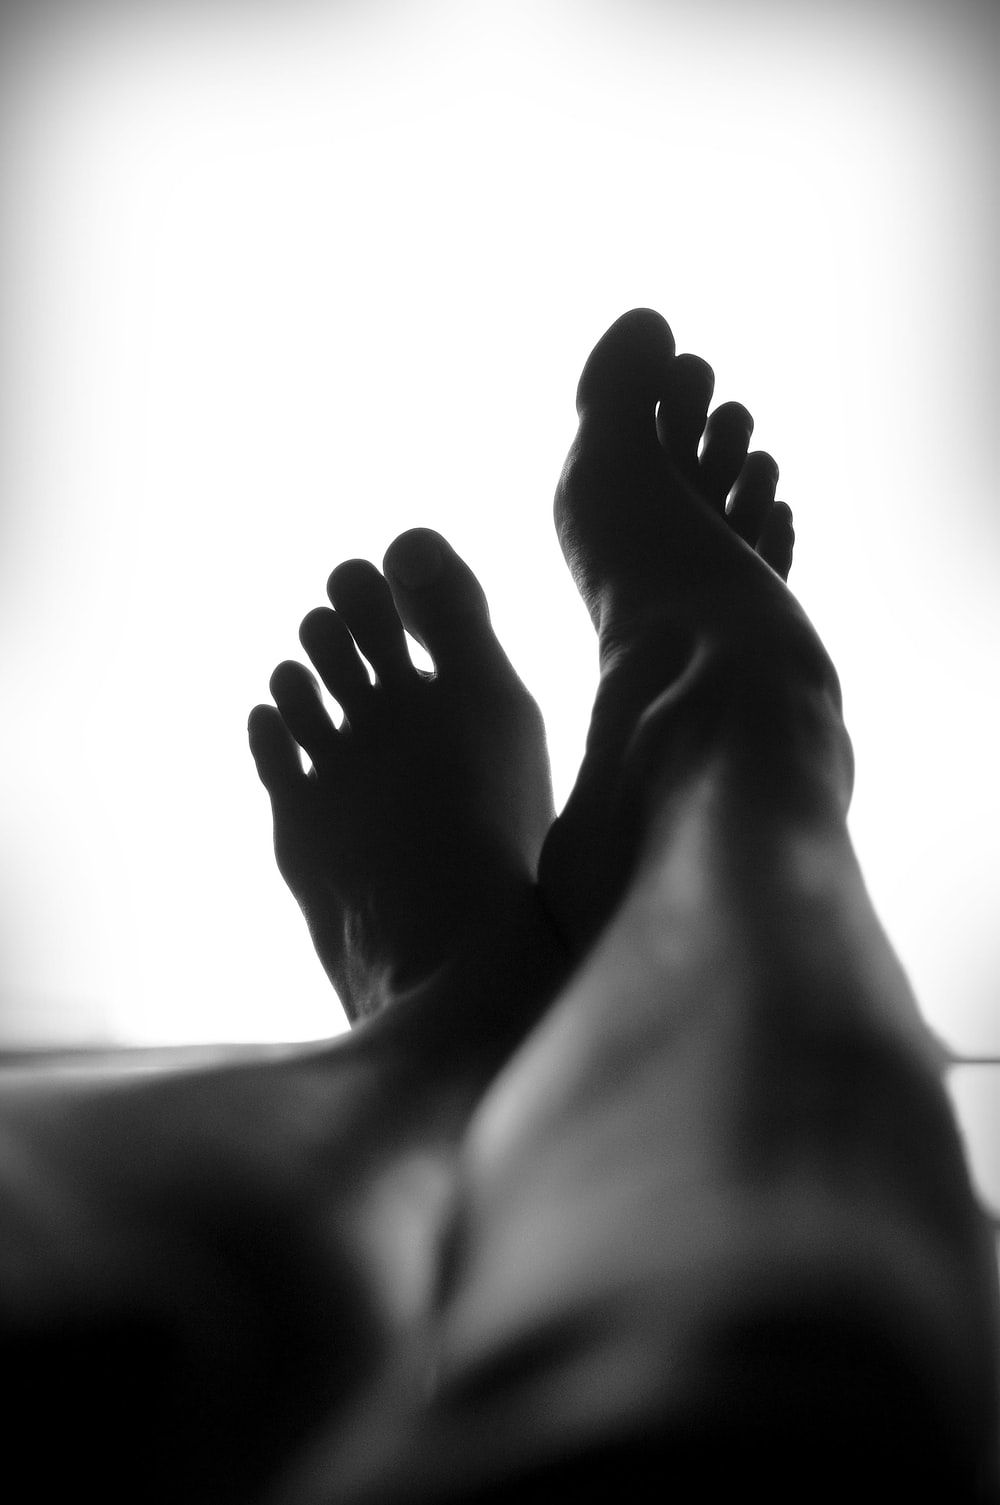 Feet Image. Download Free Image